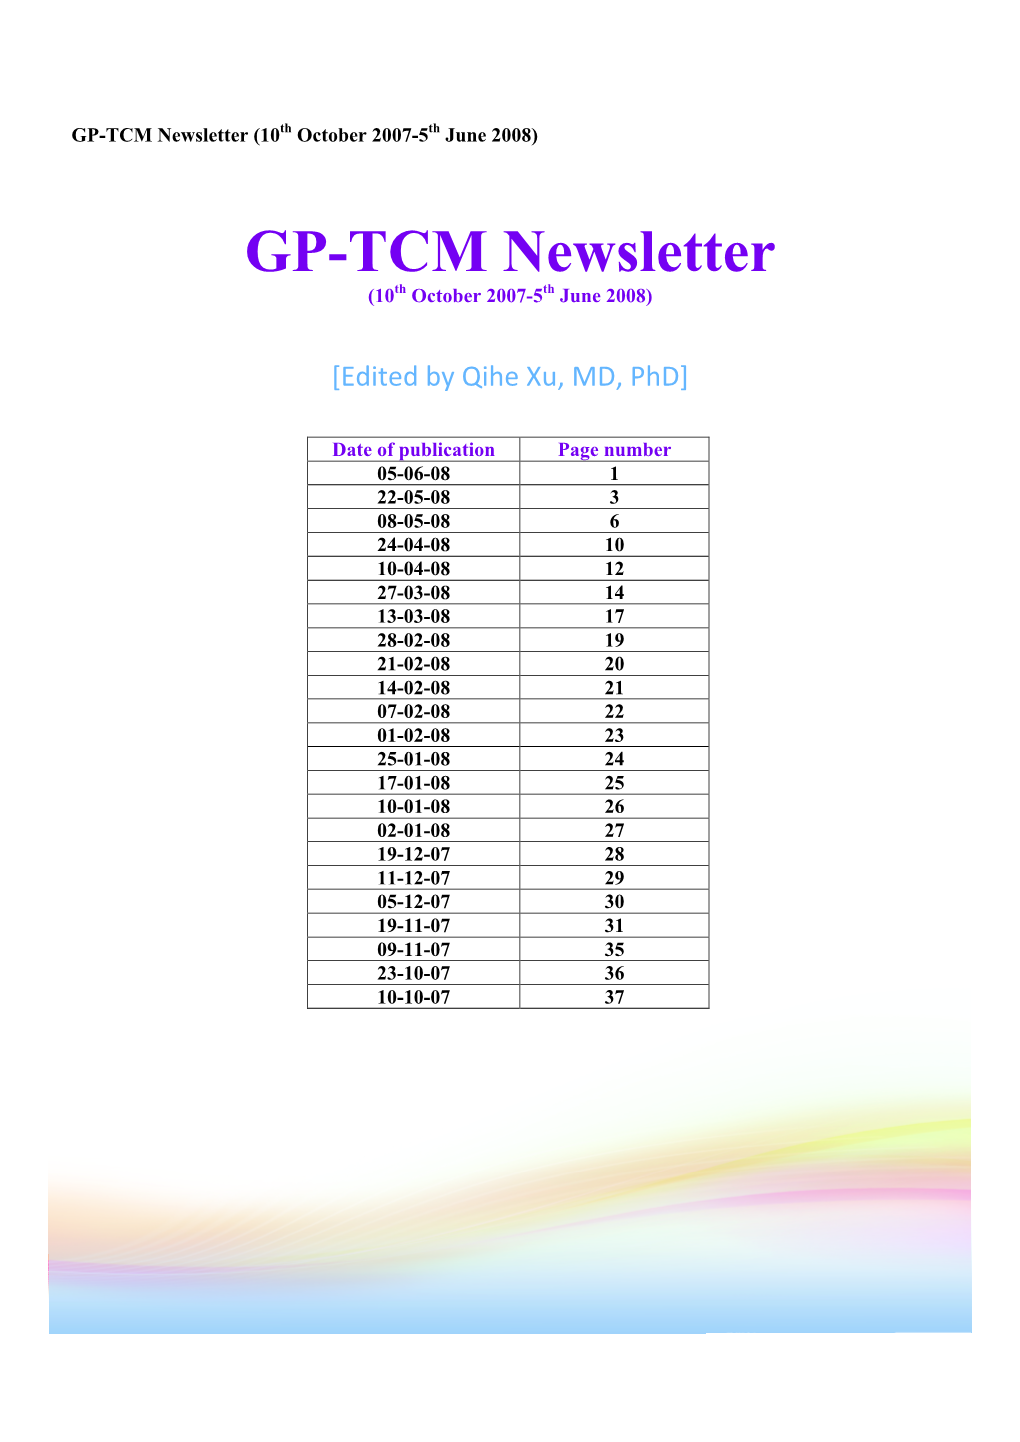 GP-TCM Newsletters October 2007